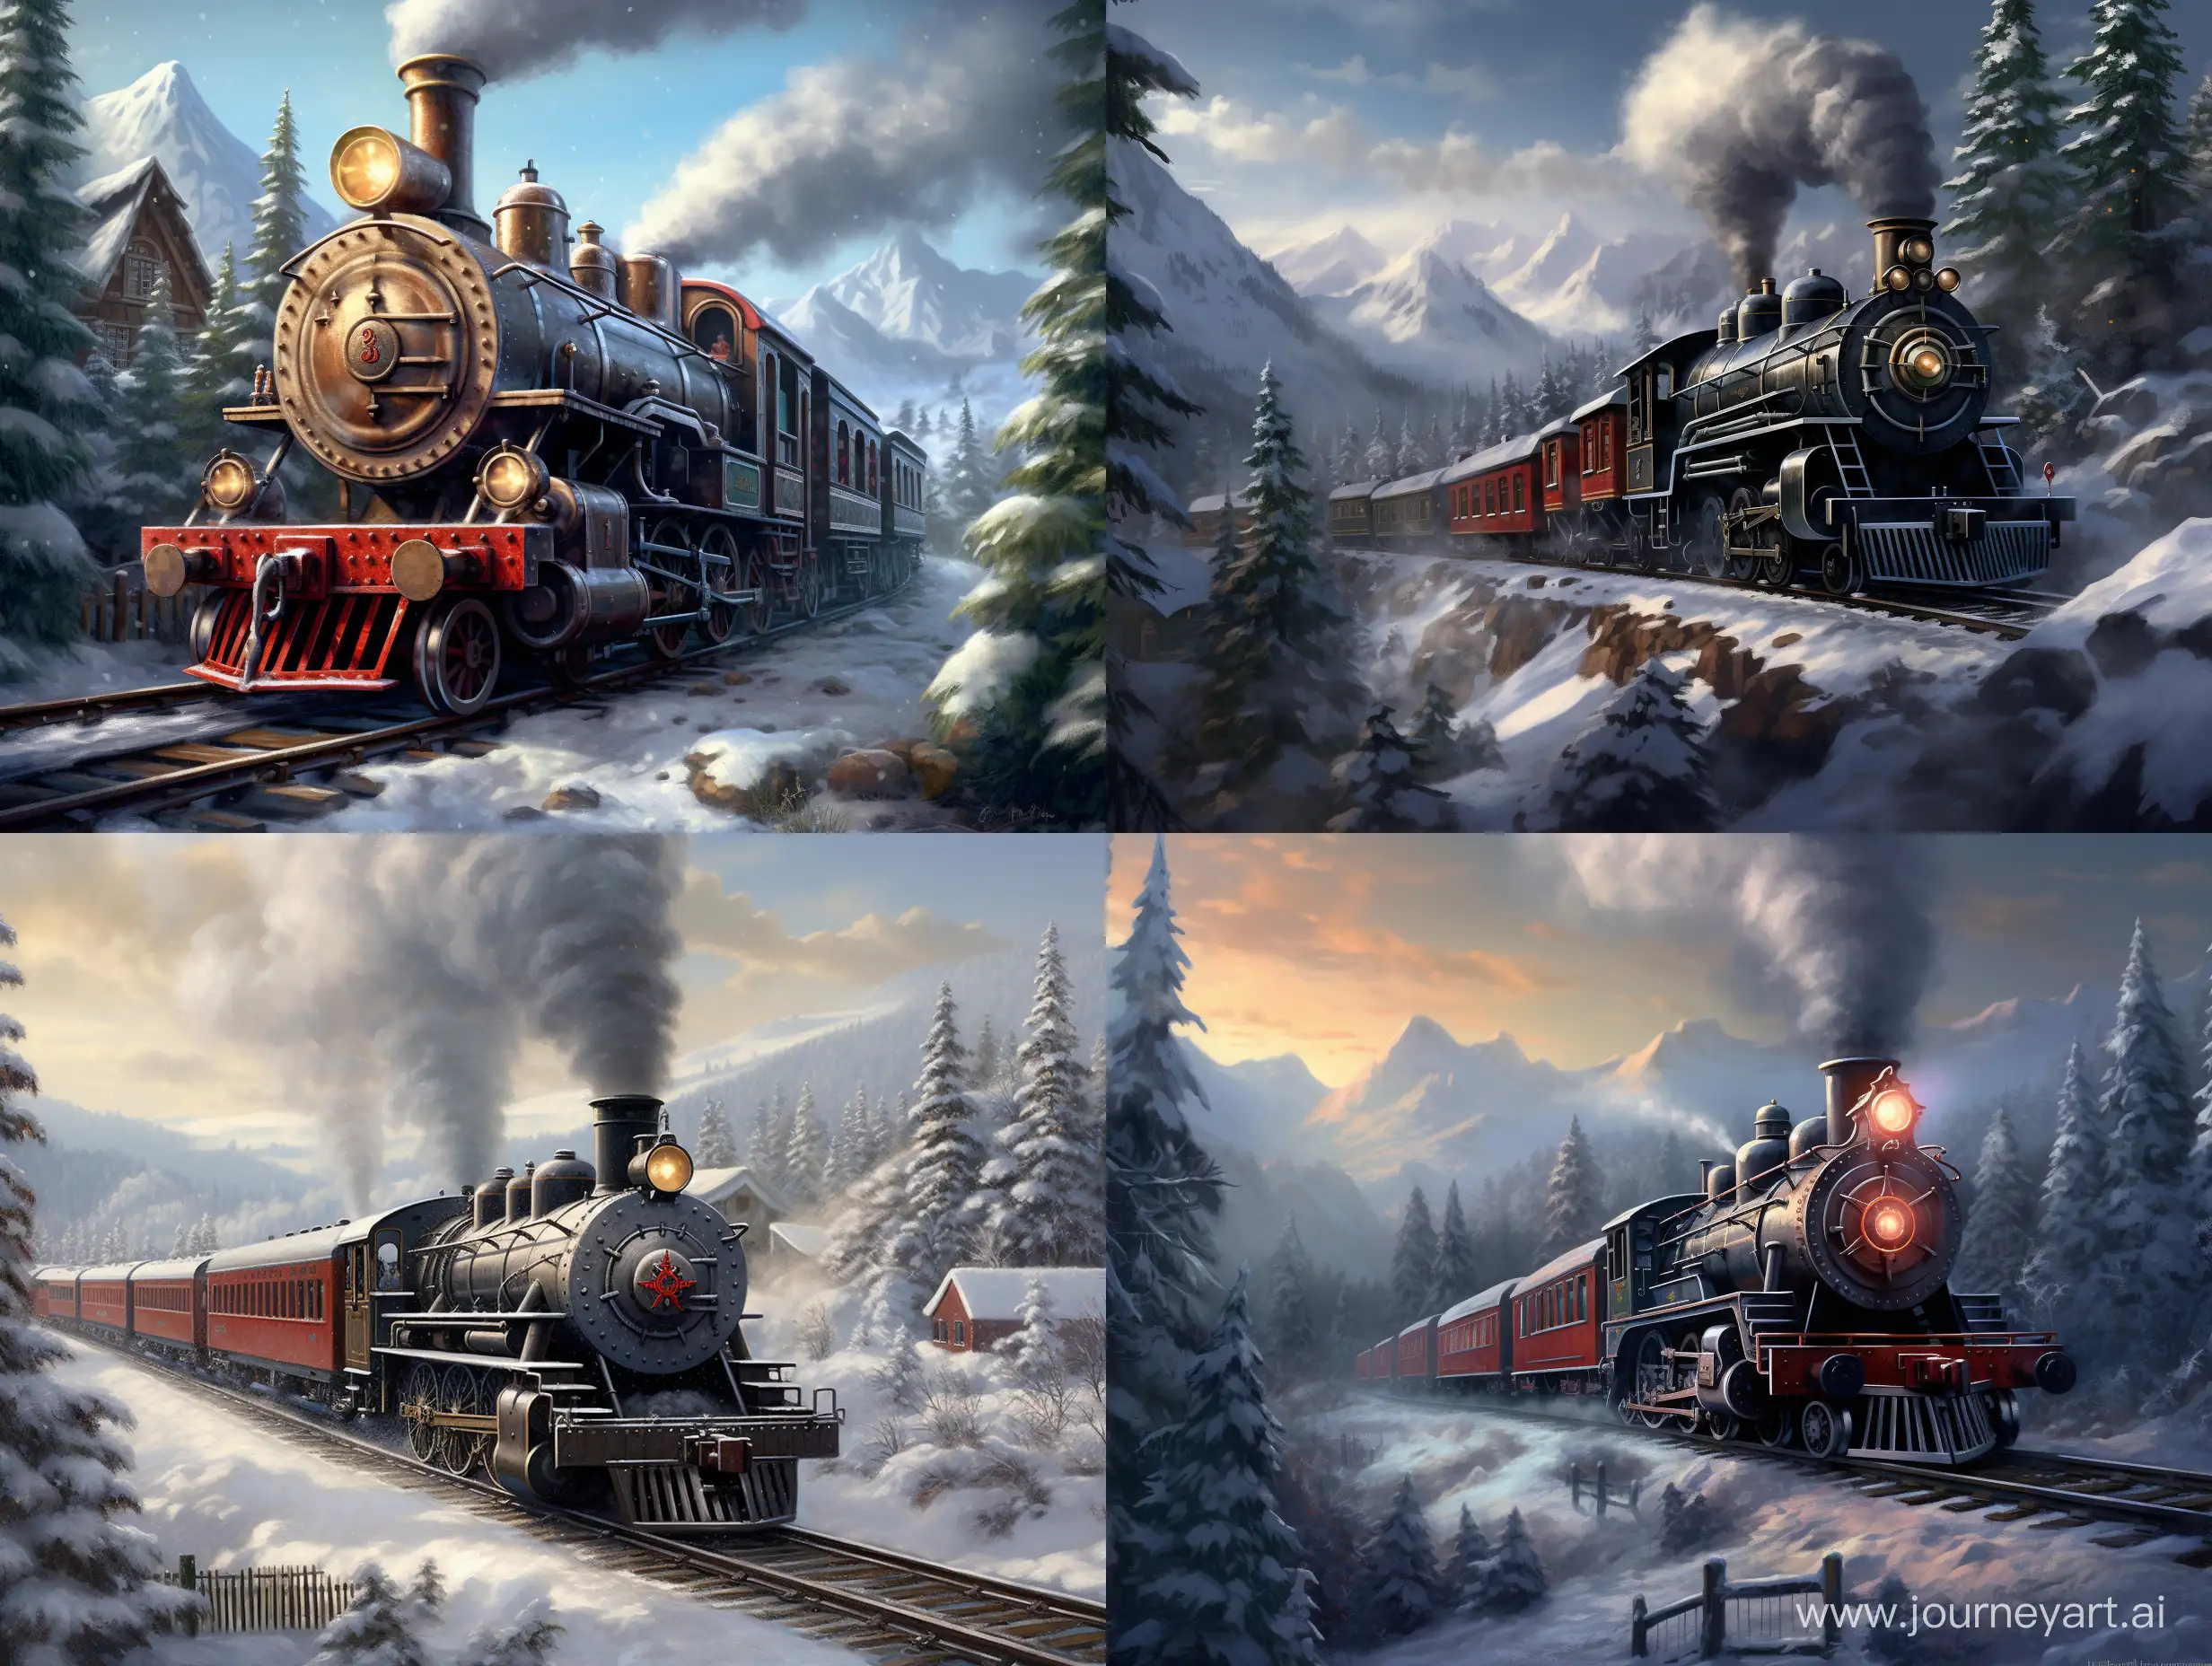 Steam locomotive snow, forest, village